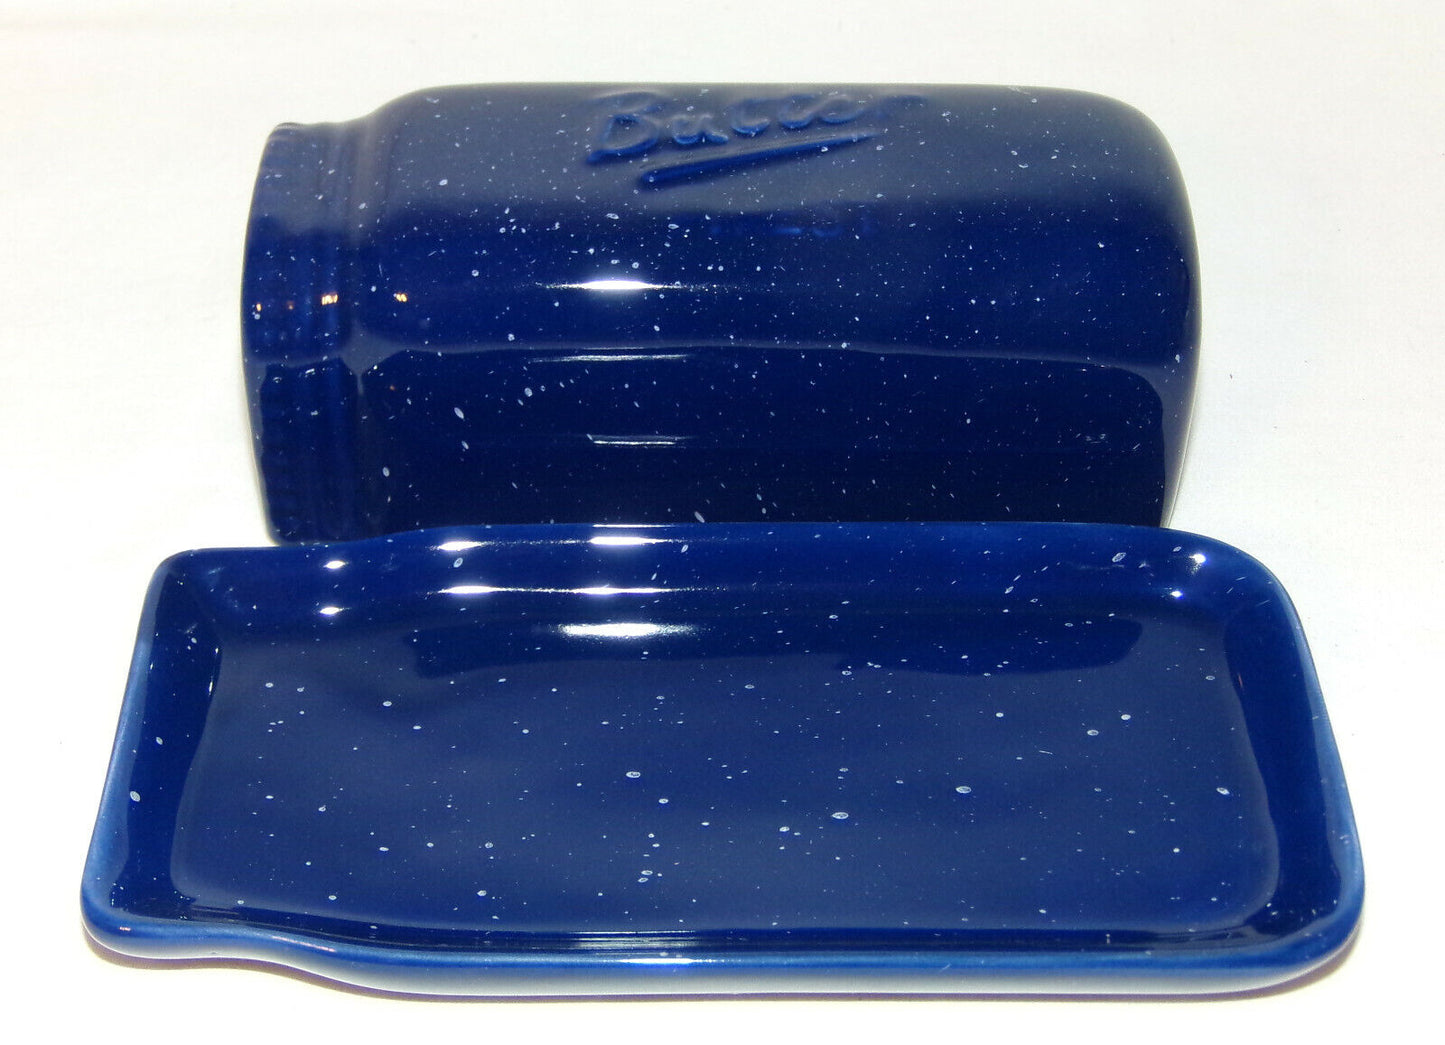 Mason Jar Butter Dish Cobalt Blue Porcelain Graniteware Butter Keeper Dish New